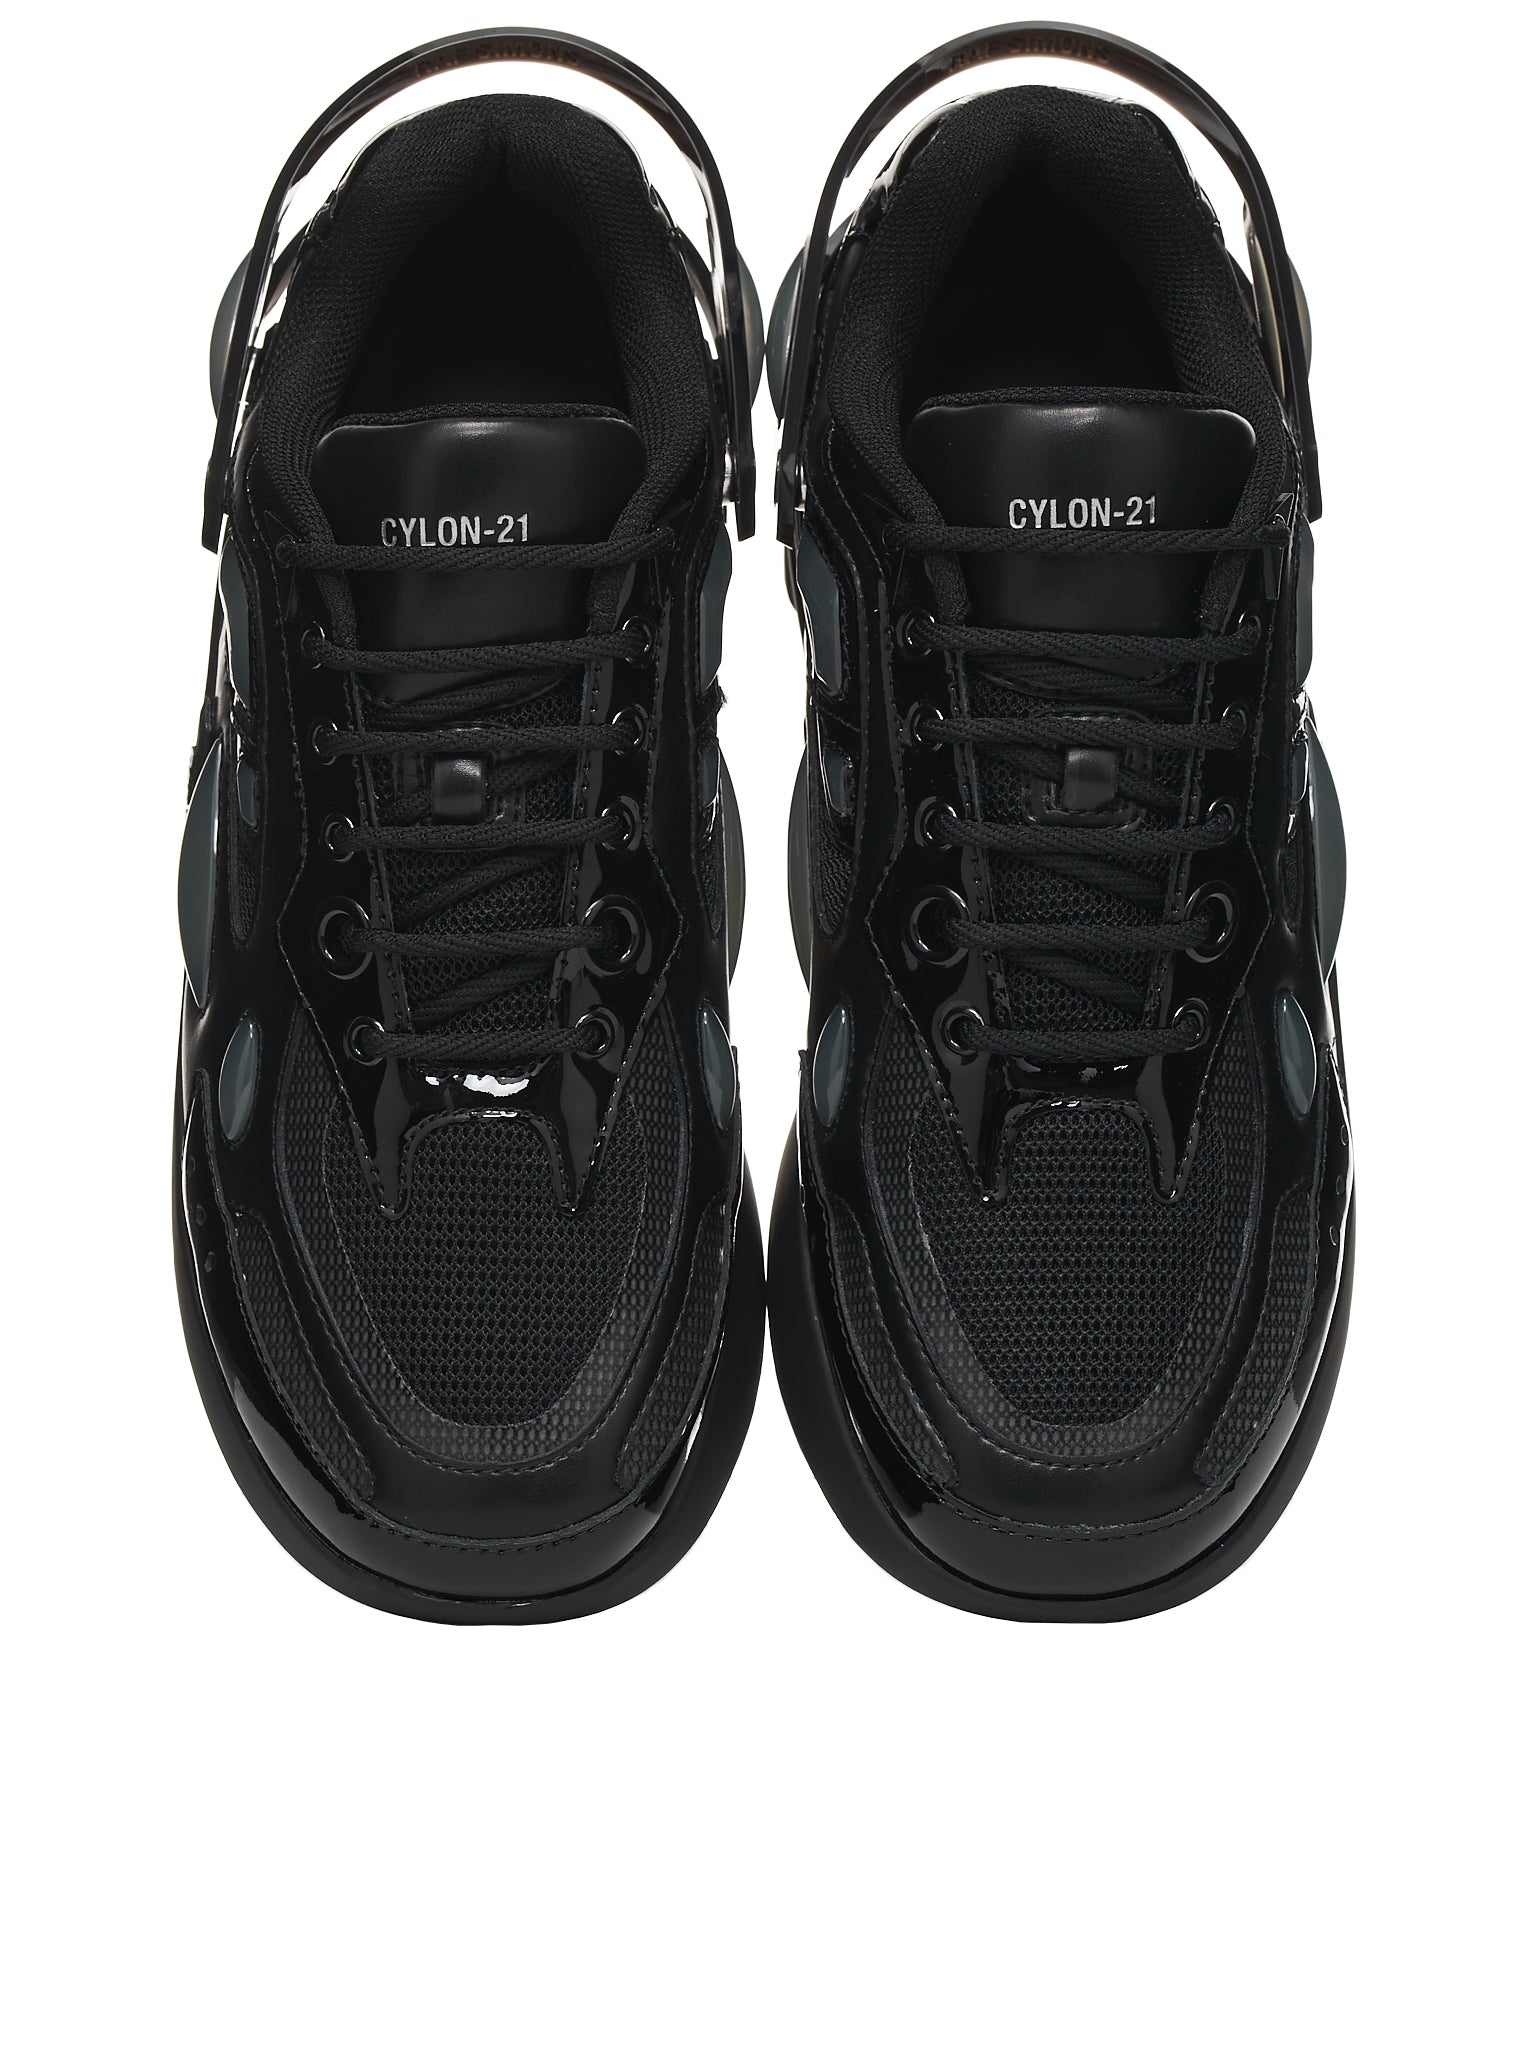 Cyclon-21 Sneakers (CYLON-21-BLACK-GREY)